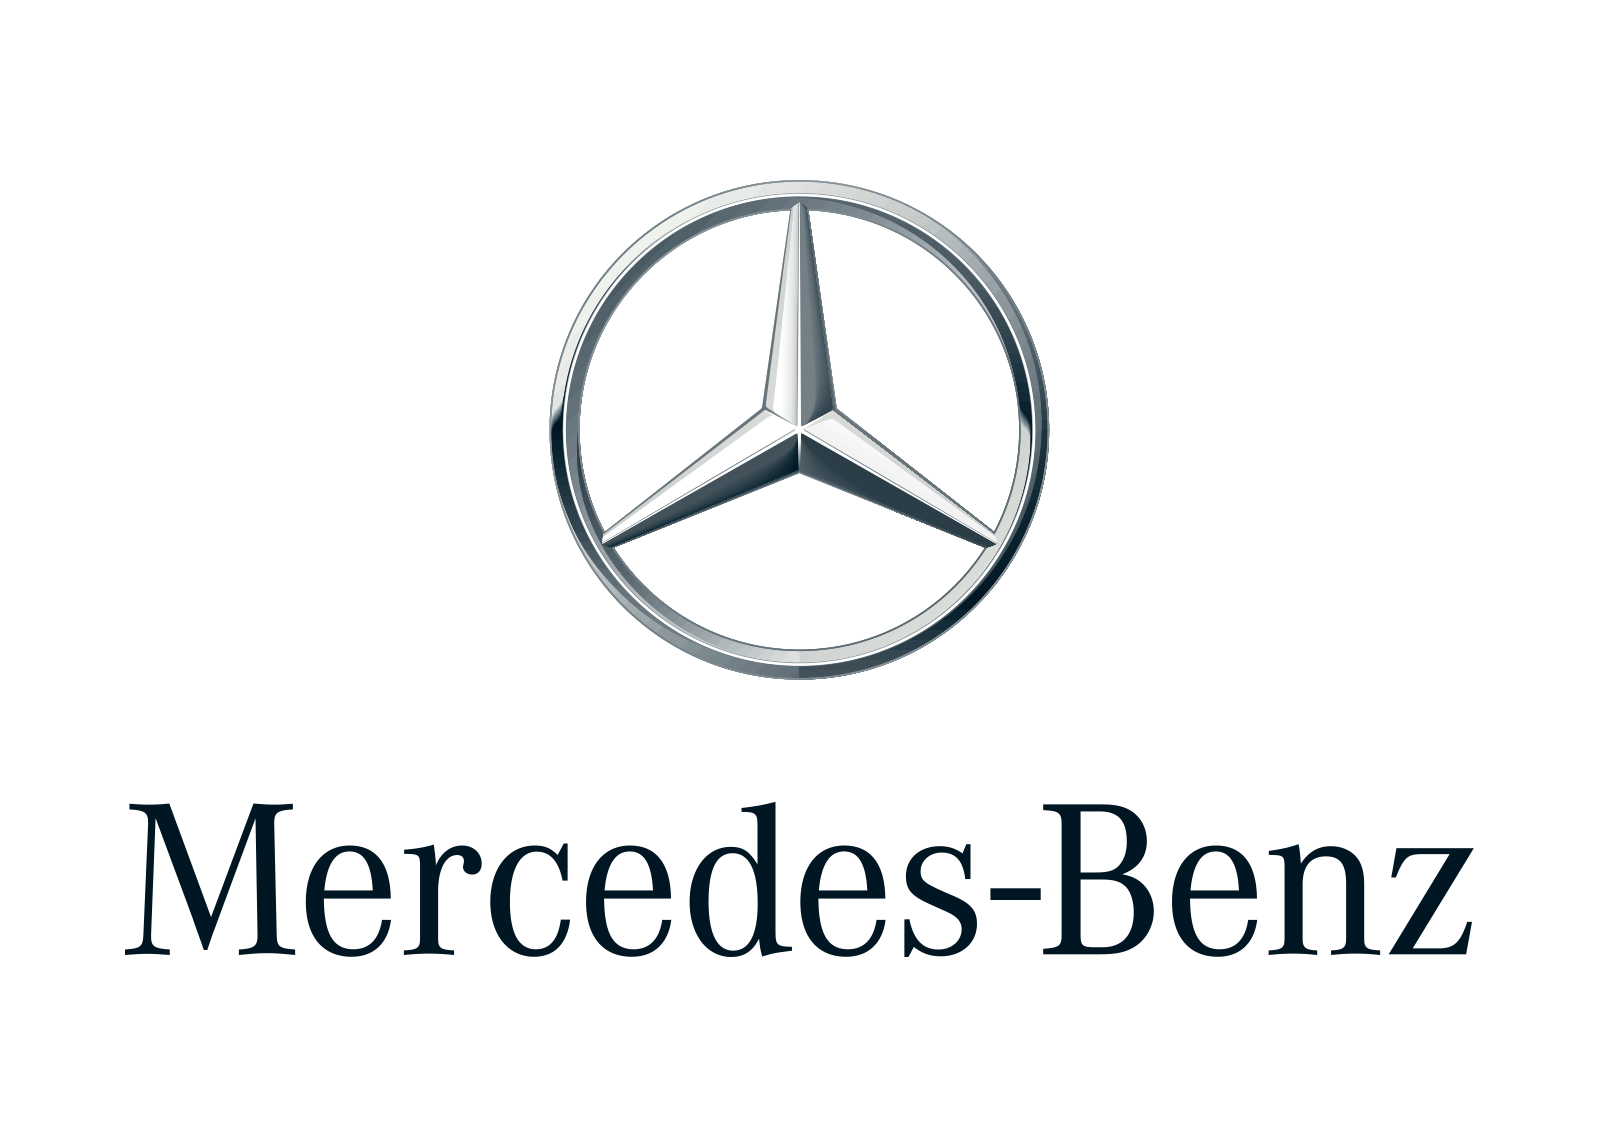 G-Class Logo - Mercedes Benz G Class Cars Rent A Car